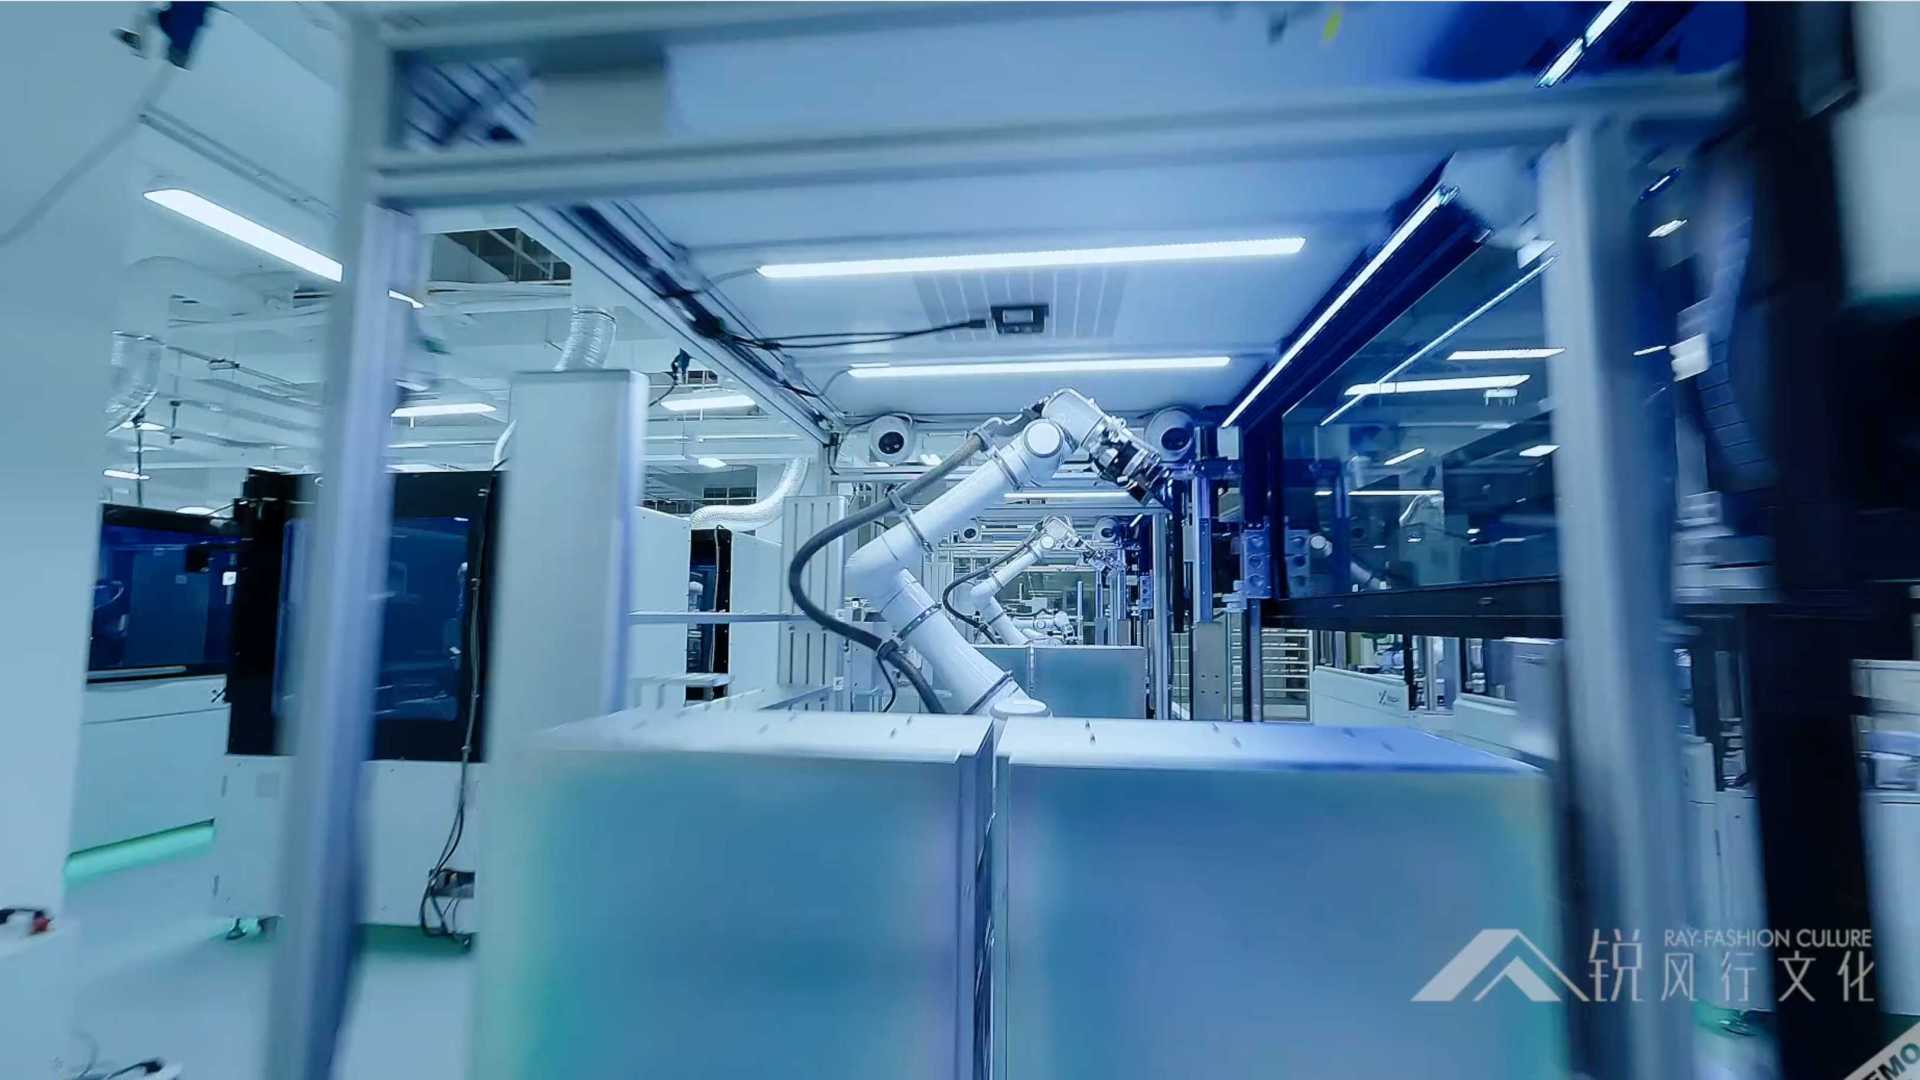 穿越机FPV 第一视角走进晶泰科技自动化实验室